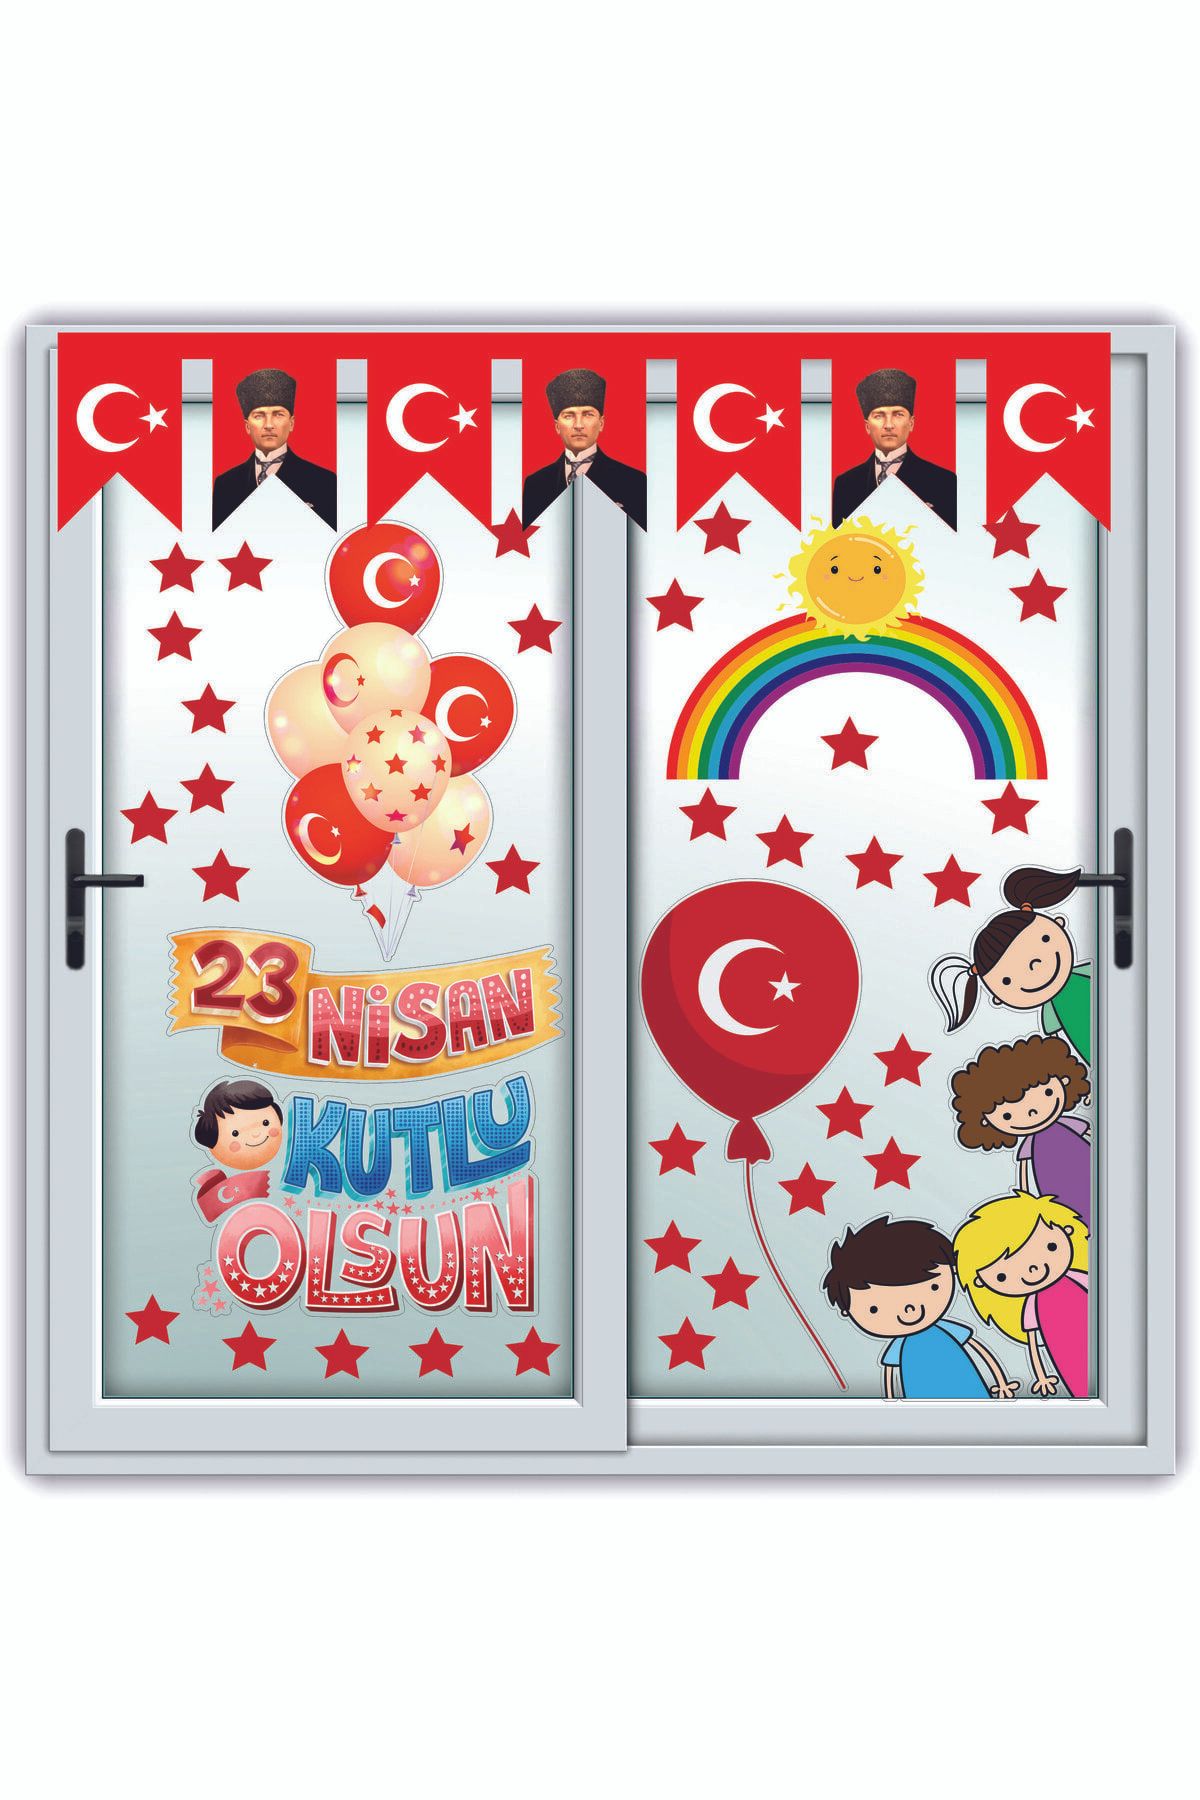 Göktuğ подарок на 23 апреля, детский день, забавный набор наклеек для украшения стеклянной стены TYC00774859668